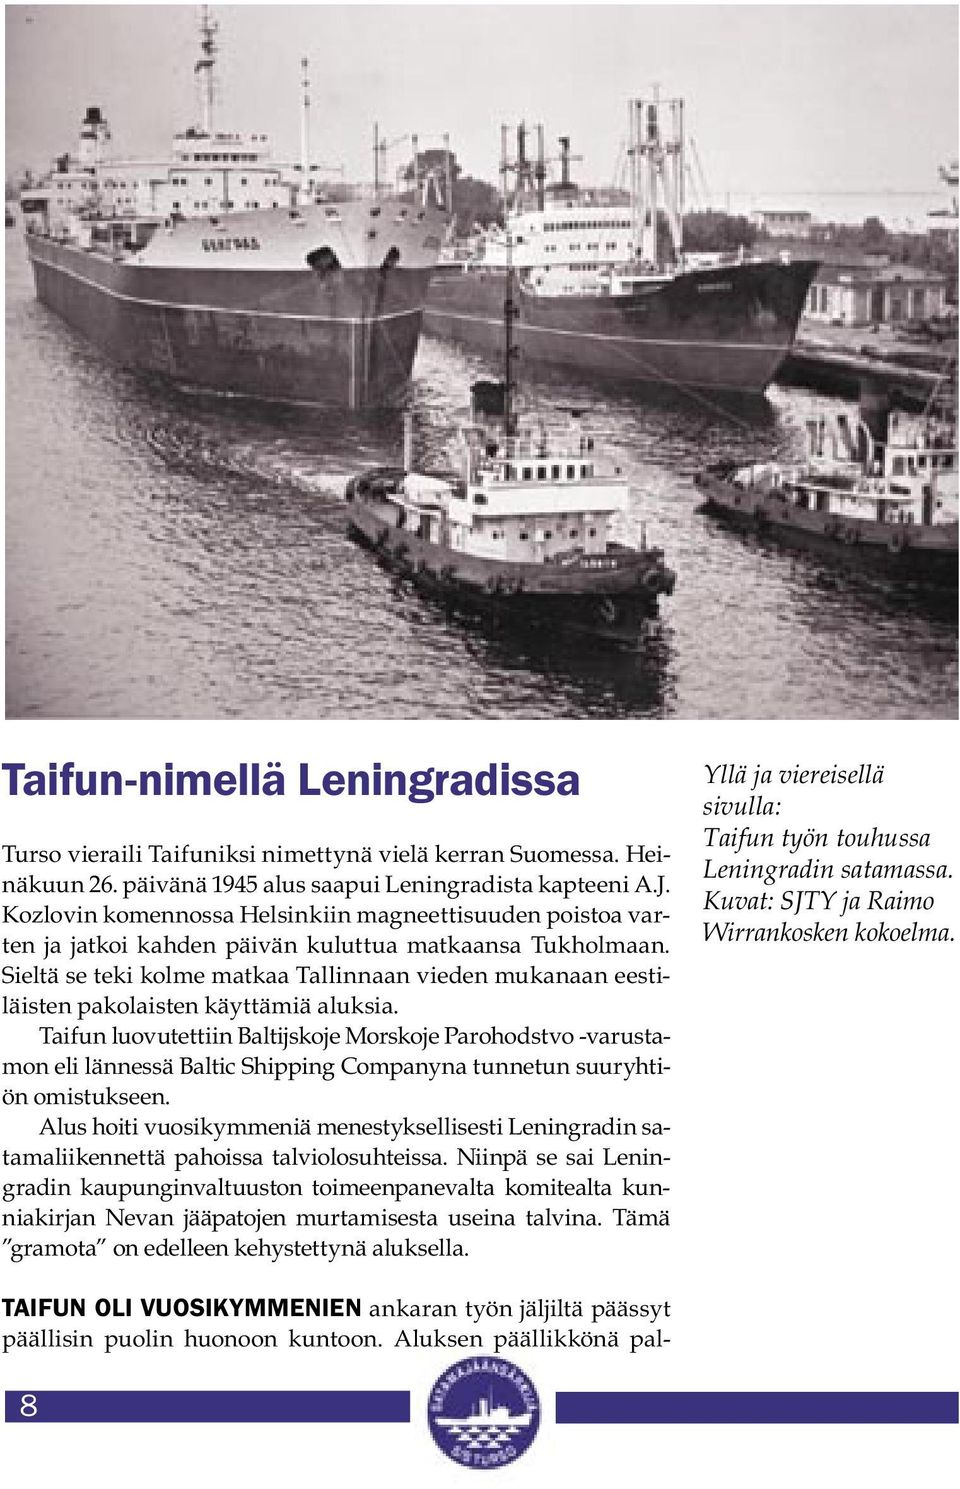 Sieltä se teki kolme matkaa Tallinnaan vieden mukanaan eestiläisten pakolaisten käyttämiä aluksia.